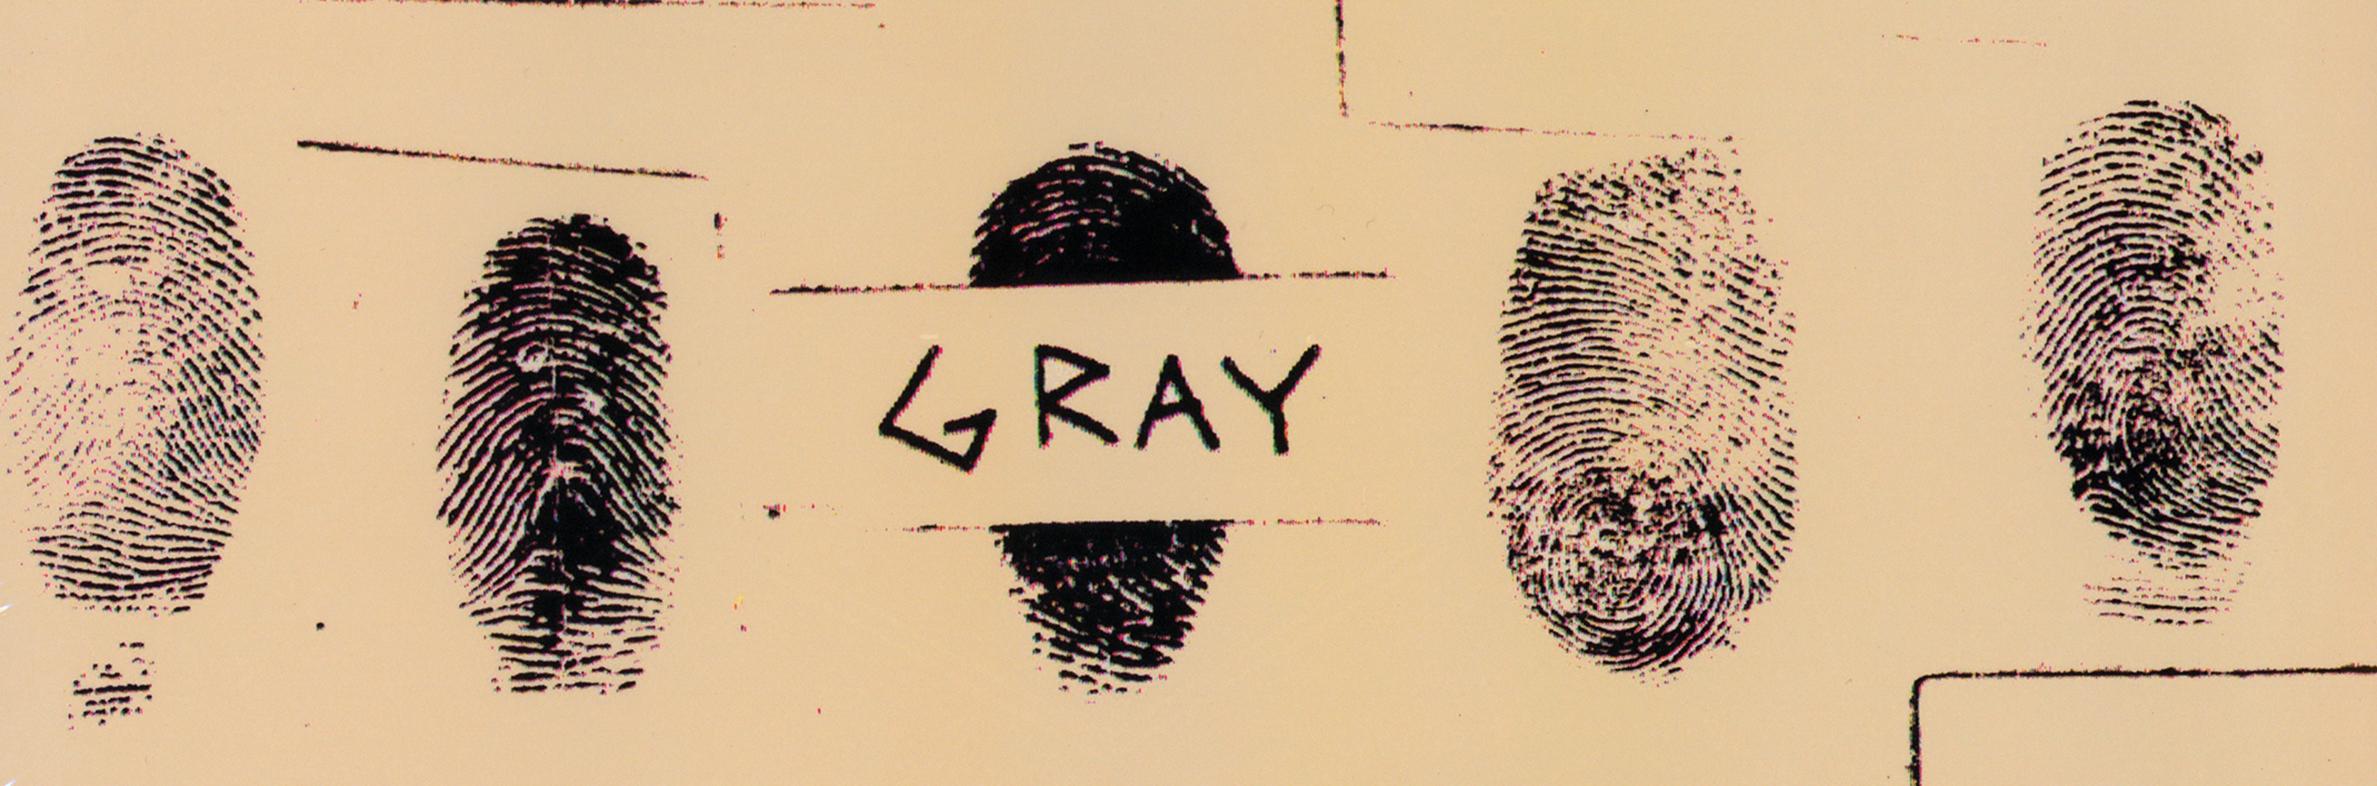 Gris (2) 
Nuances de... (2010), 2013
Vinyle, LP, Réédition en édition limitée
Plush Safe Records - PSR001LP
Co-produit par Jean-Michel Basquiat

Rare 